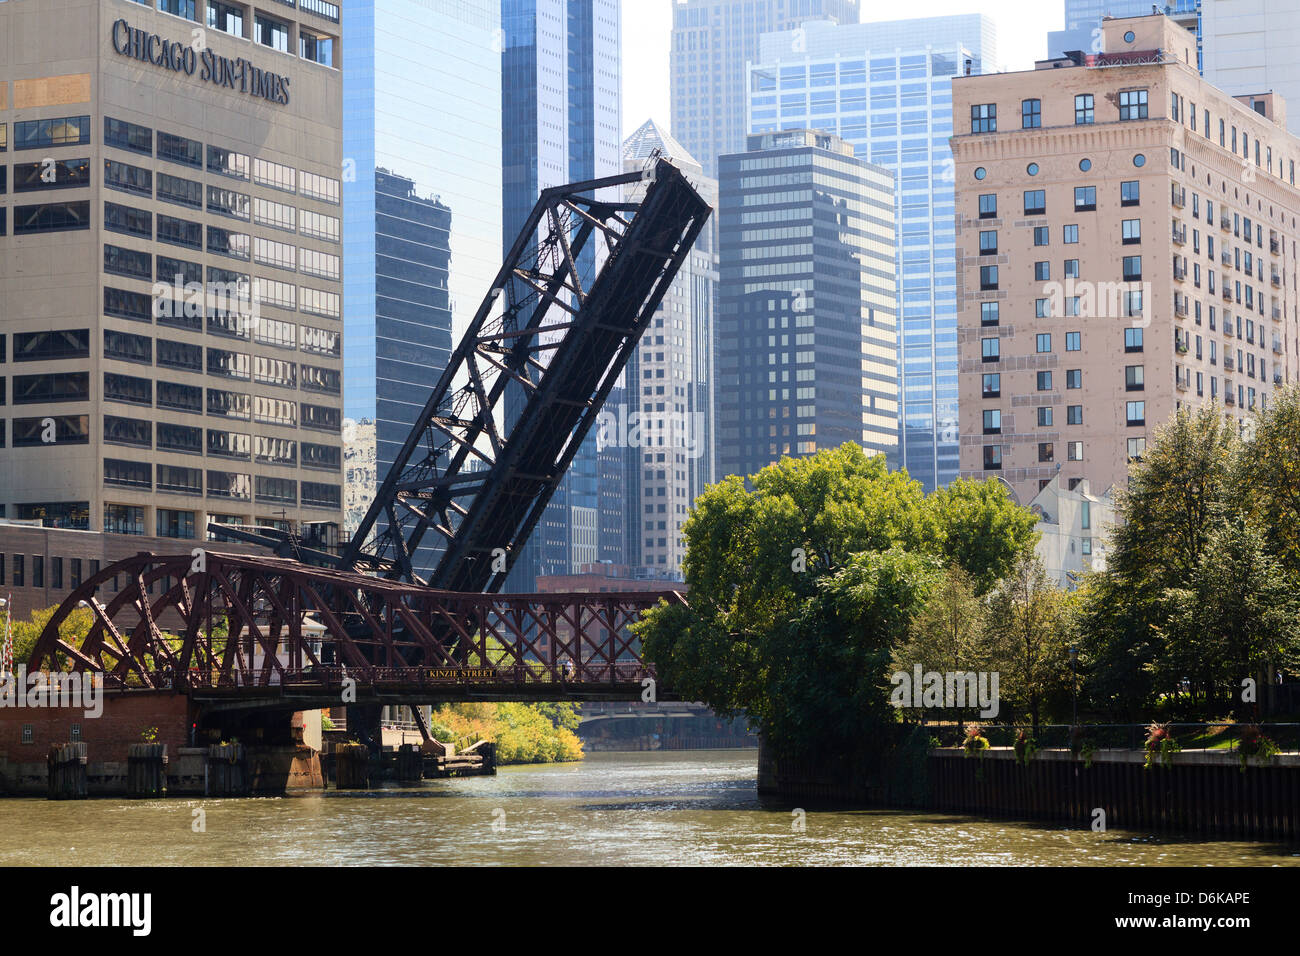 Scène de la rivière Chicago, Chicago, Illinois, États-Unis d'Amérique, Amérique du Nord Banque D'Images